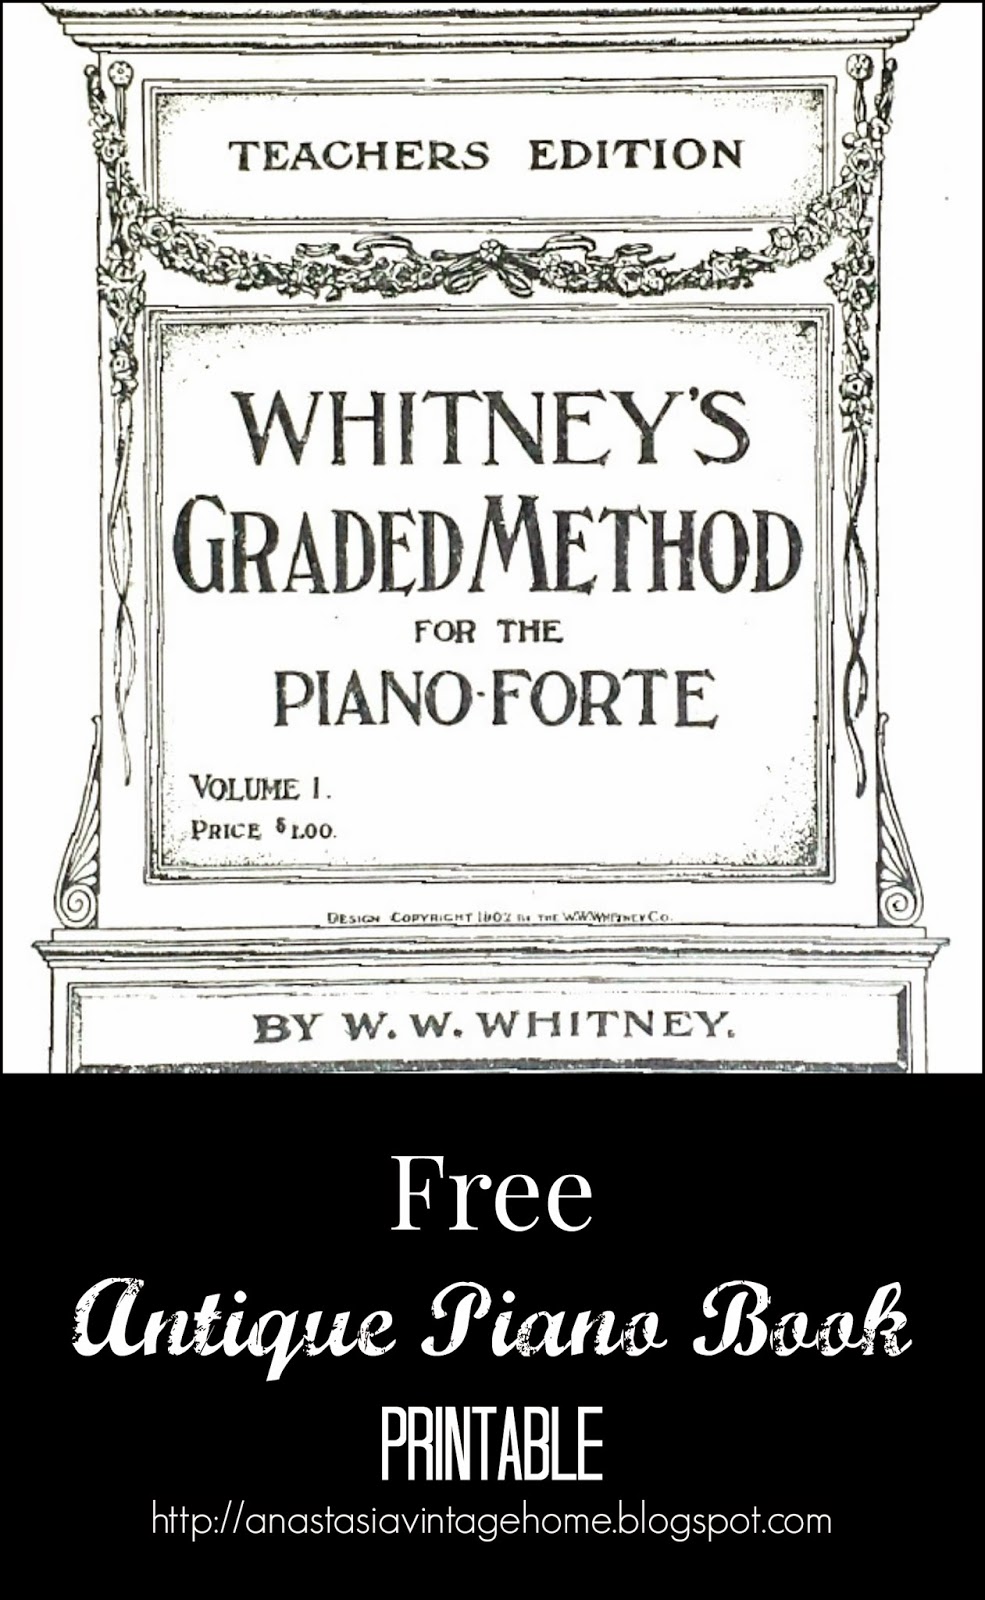 Free Antique Piano Book Printable | Anastasia Vintage